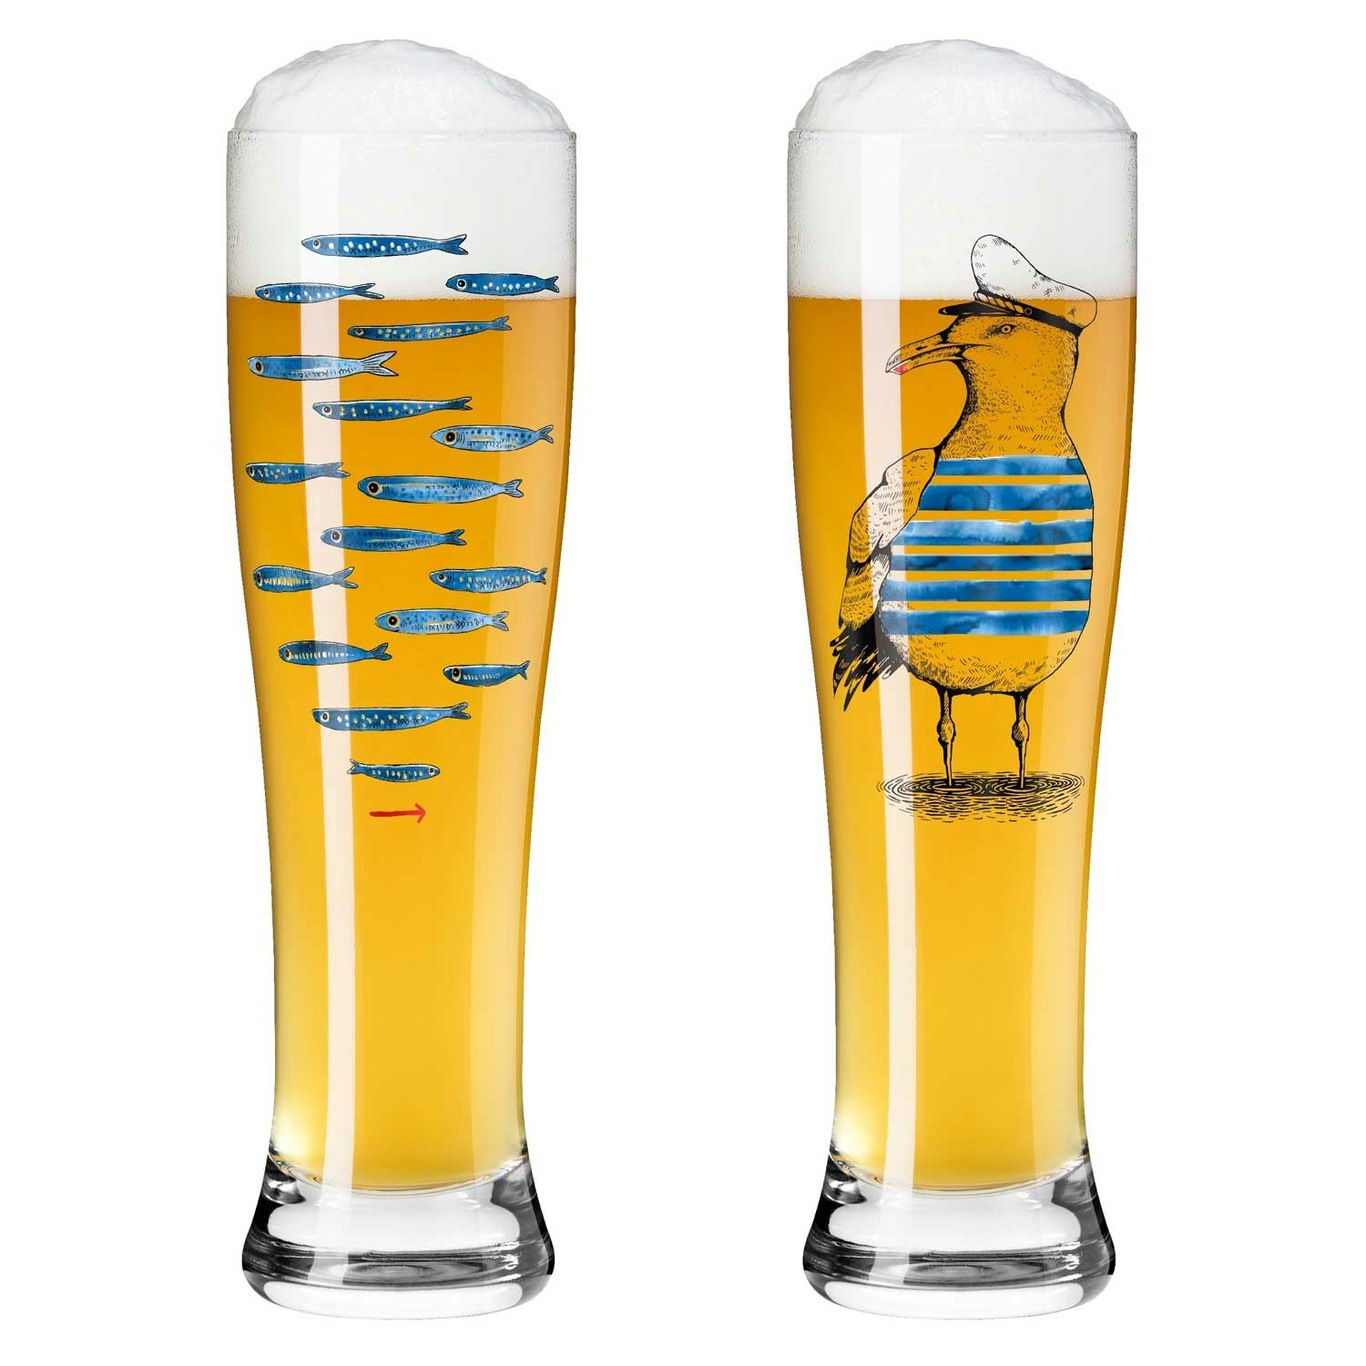 Brauchzeit Beer Glass 2-pack, #13 & 14